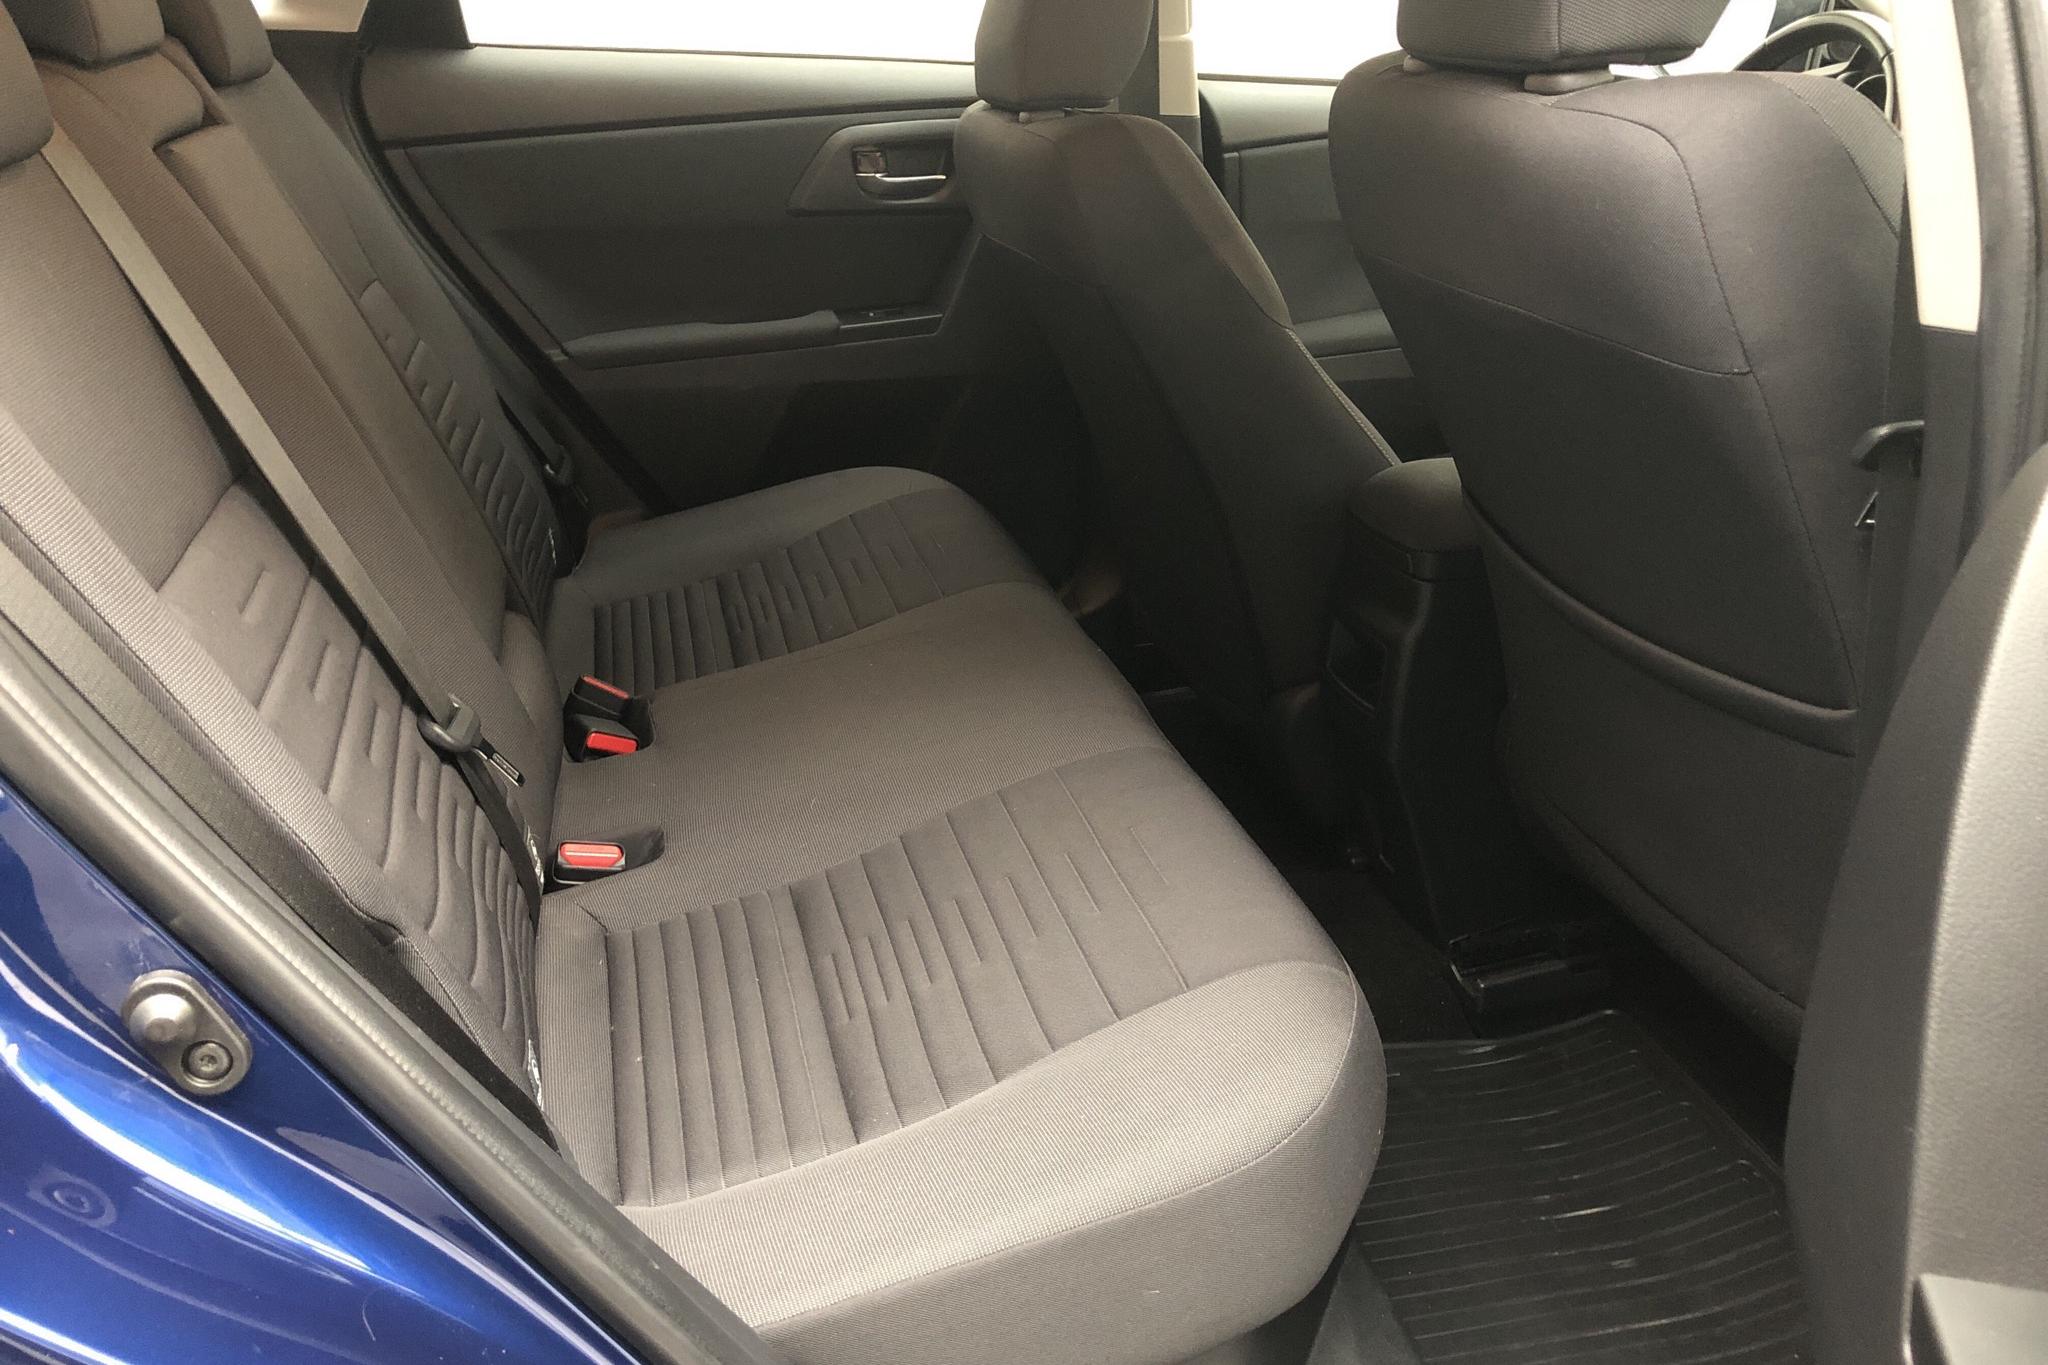 Toyota Auris 1.8 HSD 5dr (99hk) - 9 041 mil - Automat - Dark Blue - 2018